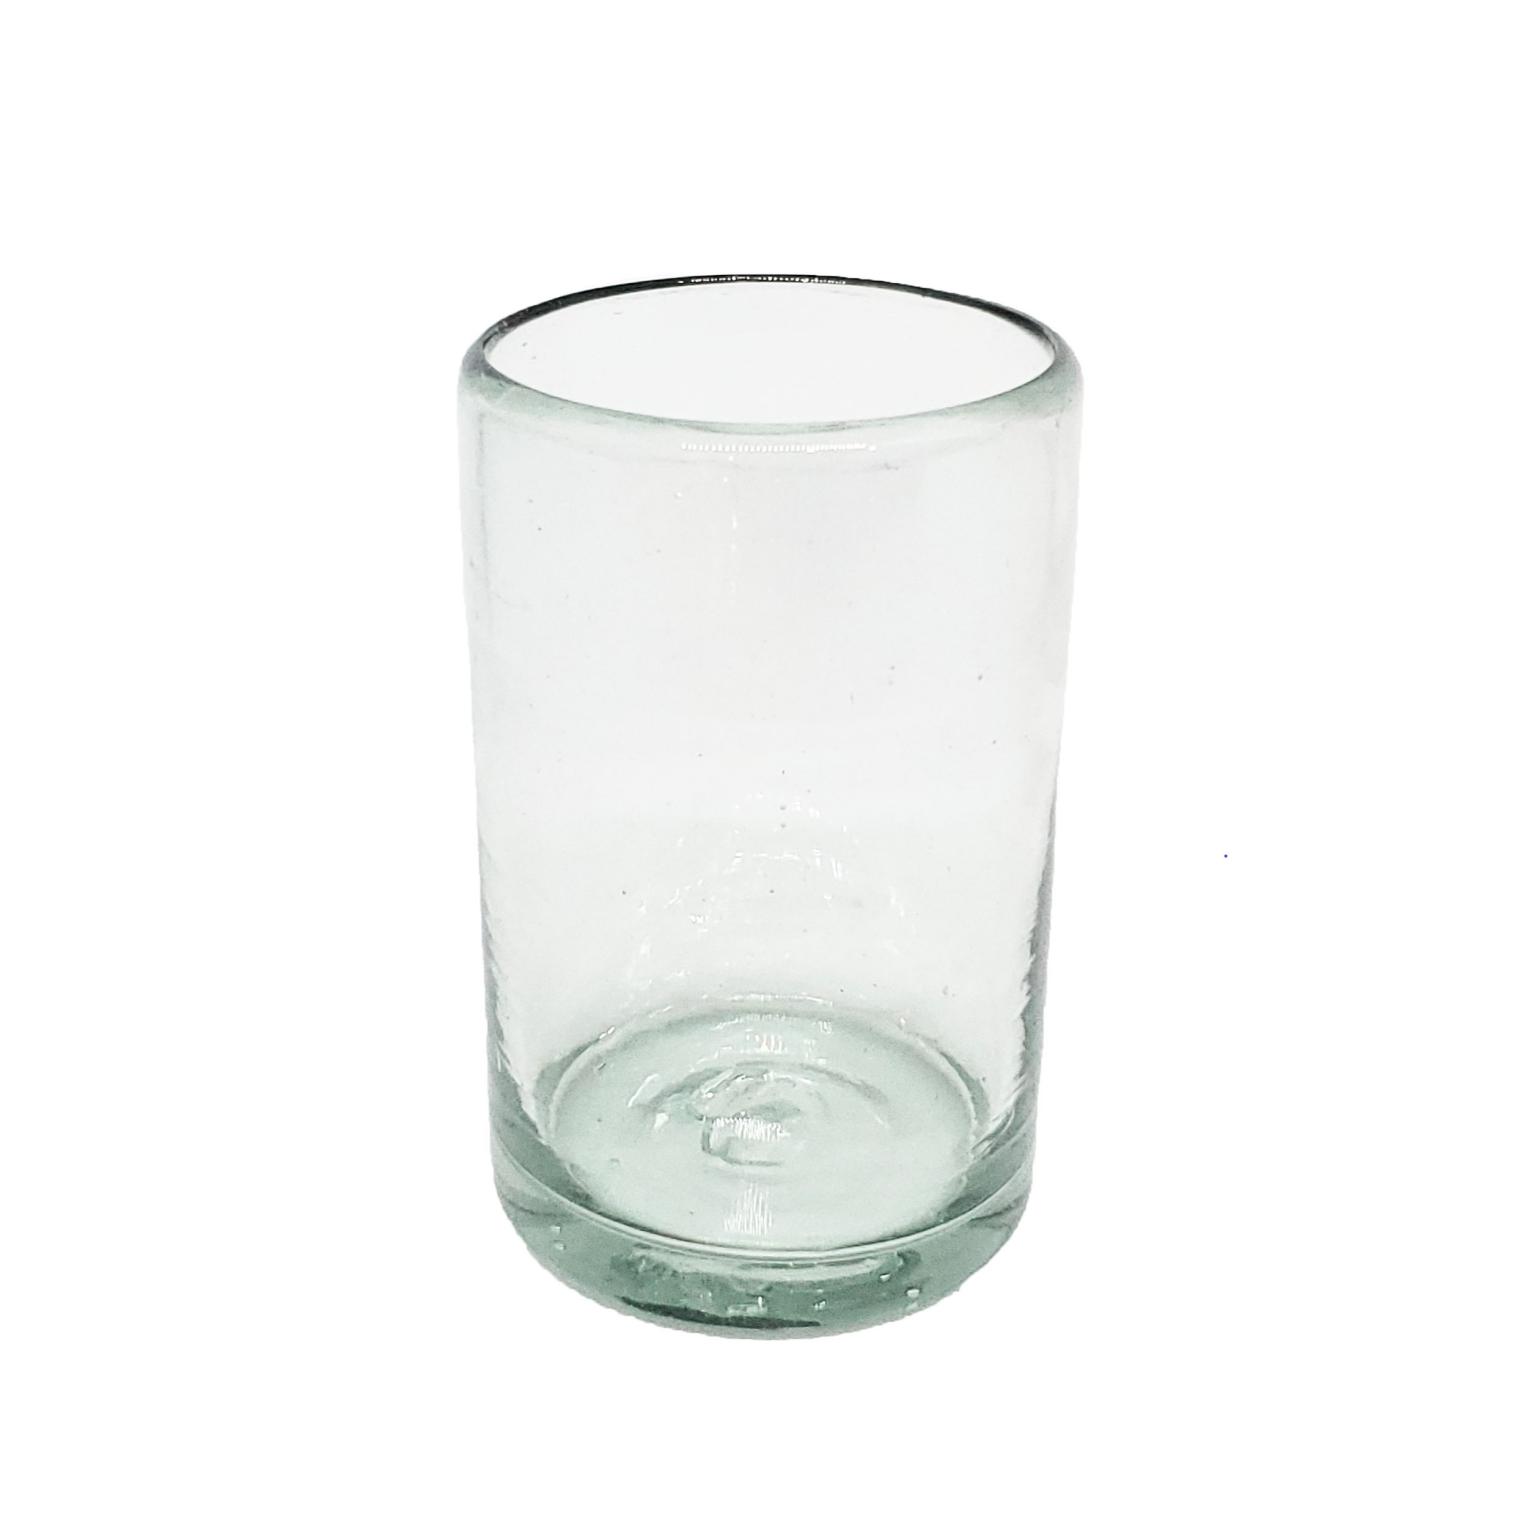 Novedades / vasos Jugo 9oz Transparentes, 9 oz, Vidrio Reciclado, Libre de Plomo y Toxinas / stos artesanales vasos le darn un toque clsico a su bebida favorita.